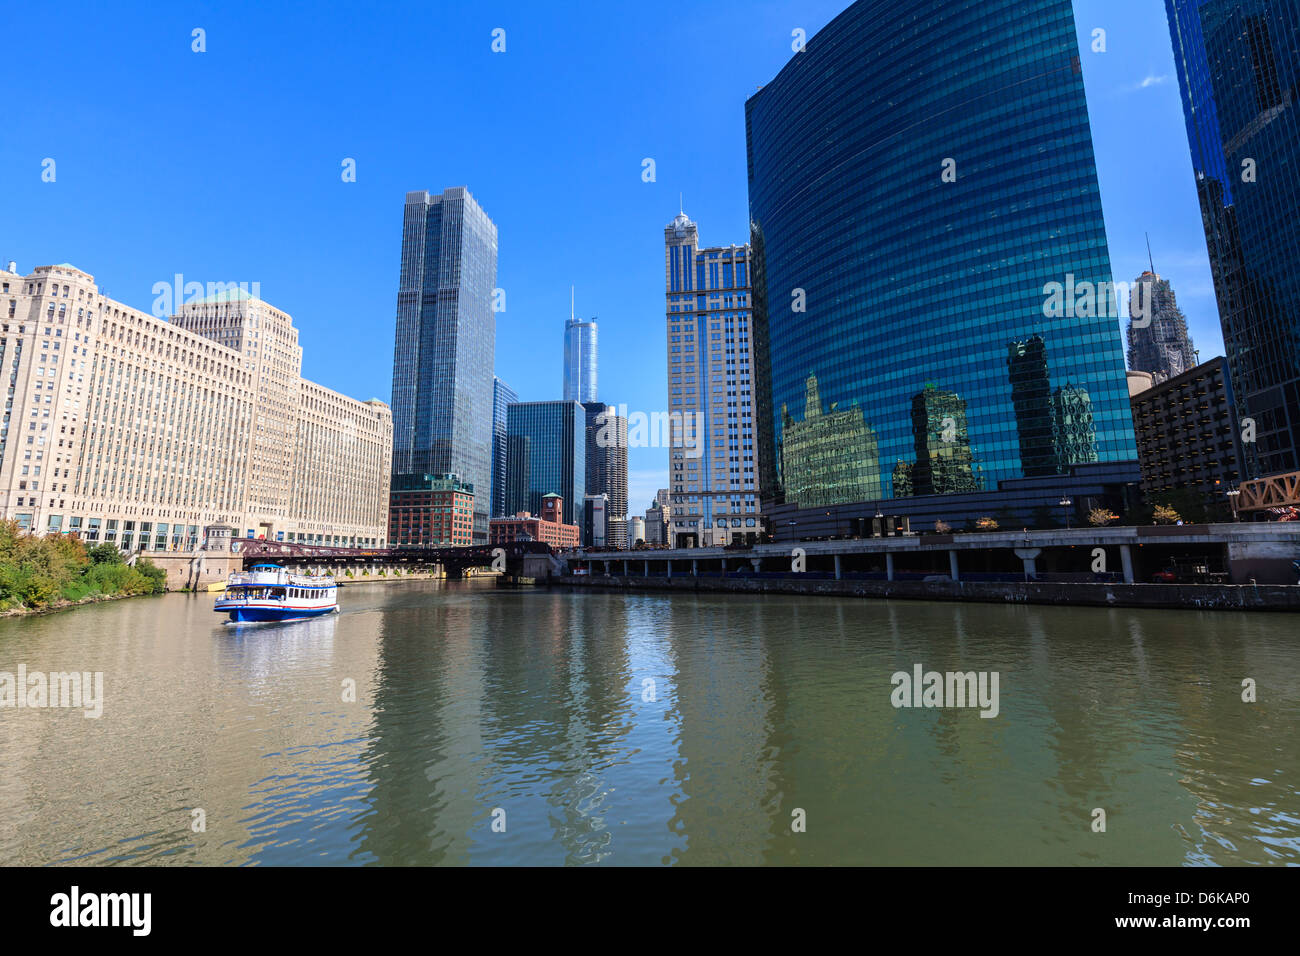 La rivière Chicago, le Merchandise Mart sur la gauche et 333 Wacker Drive bâtiment sur la droite, Chicago, Illinois, États-Unis Banque D'Images